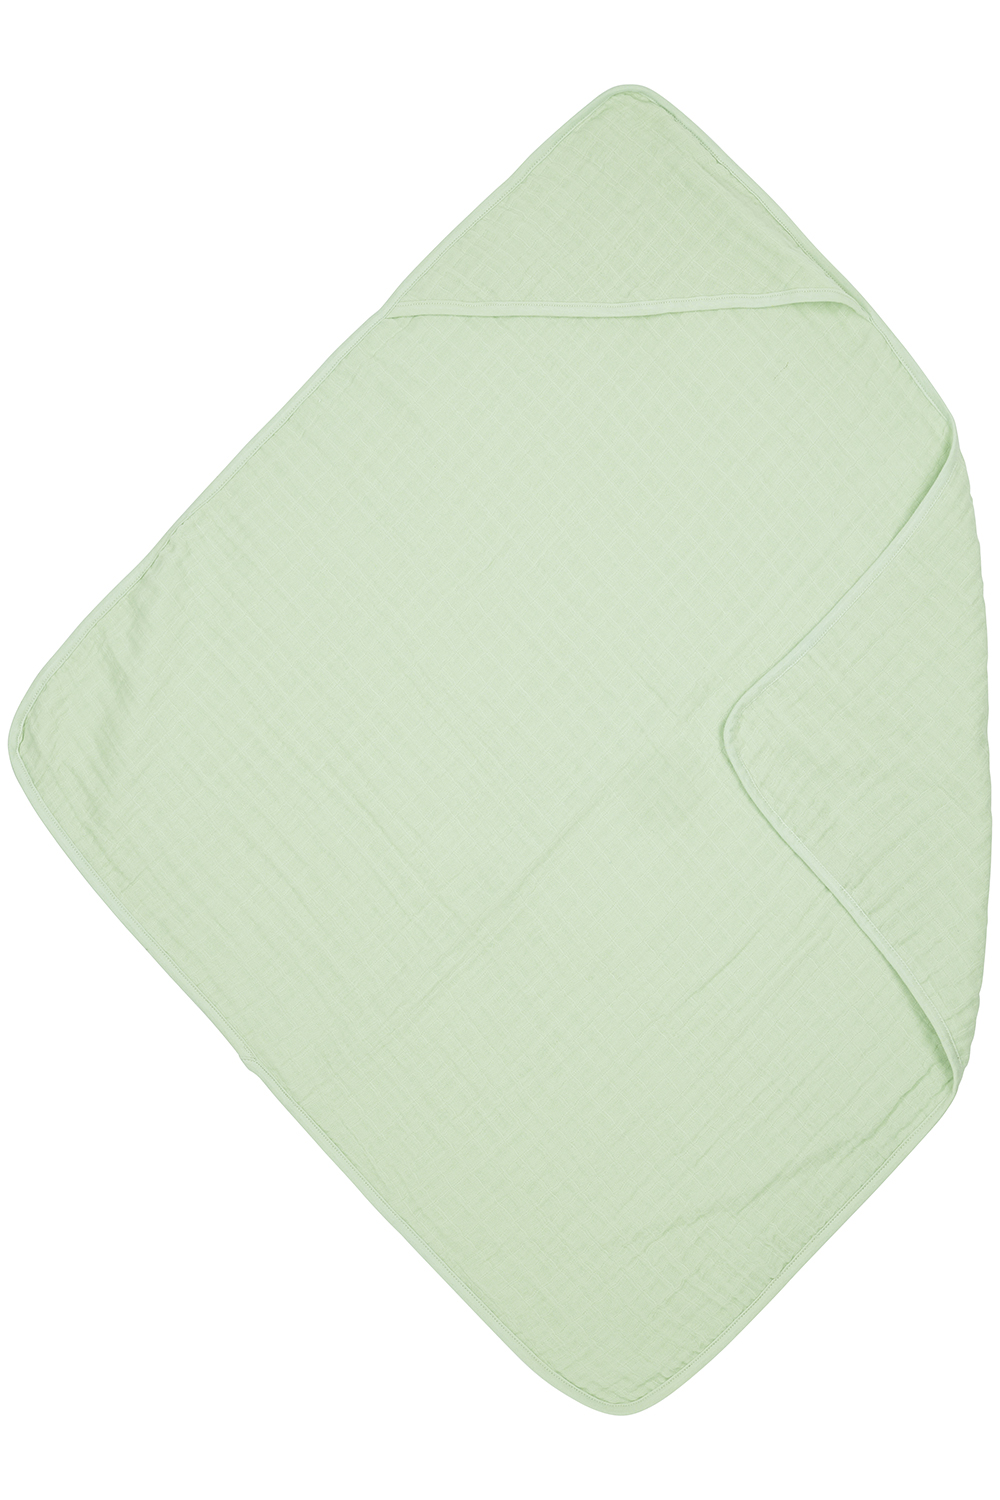 Bathcape pre-washed muslin Uni - soft green - 80x80cm